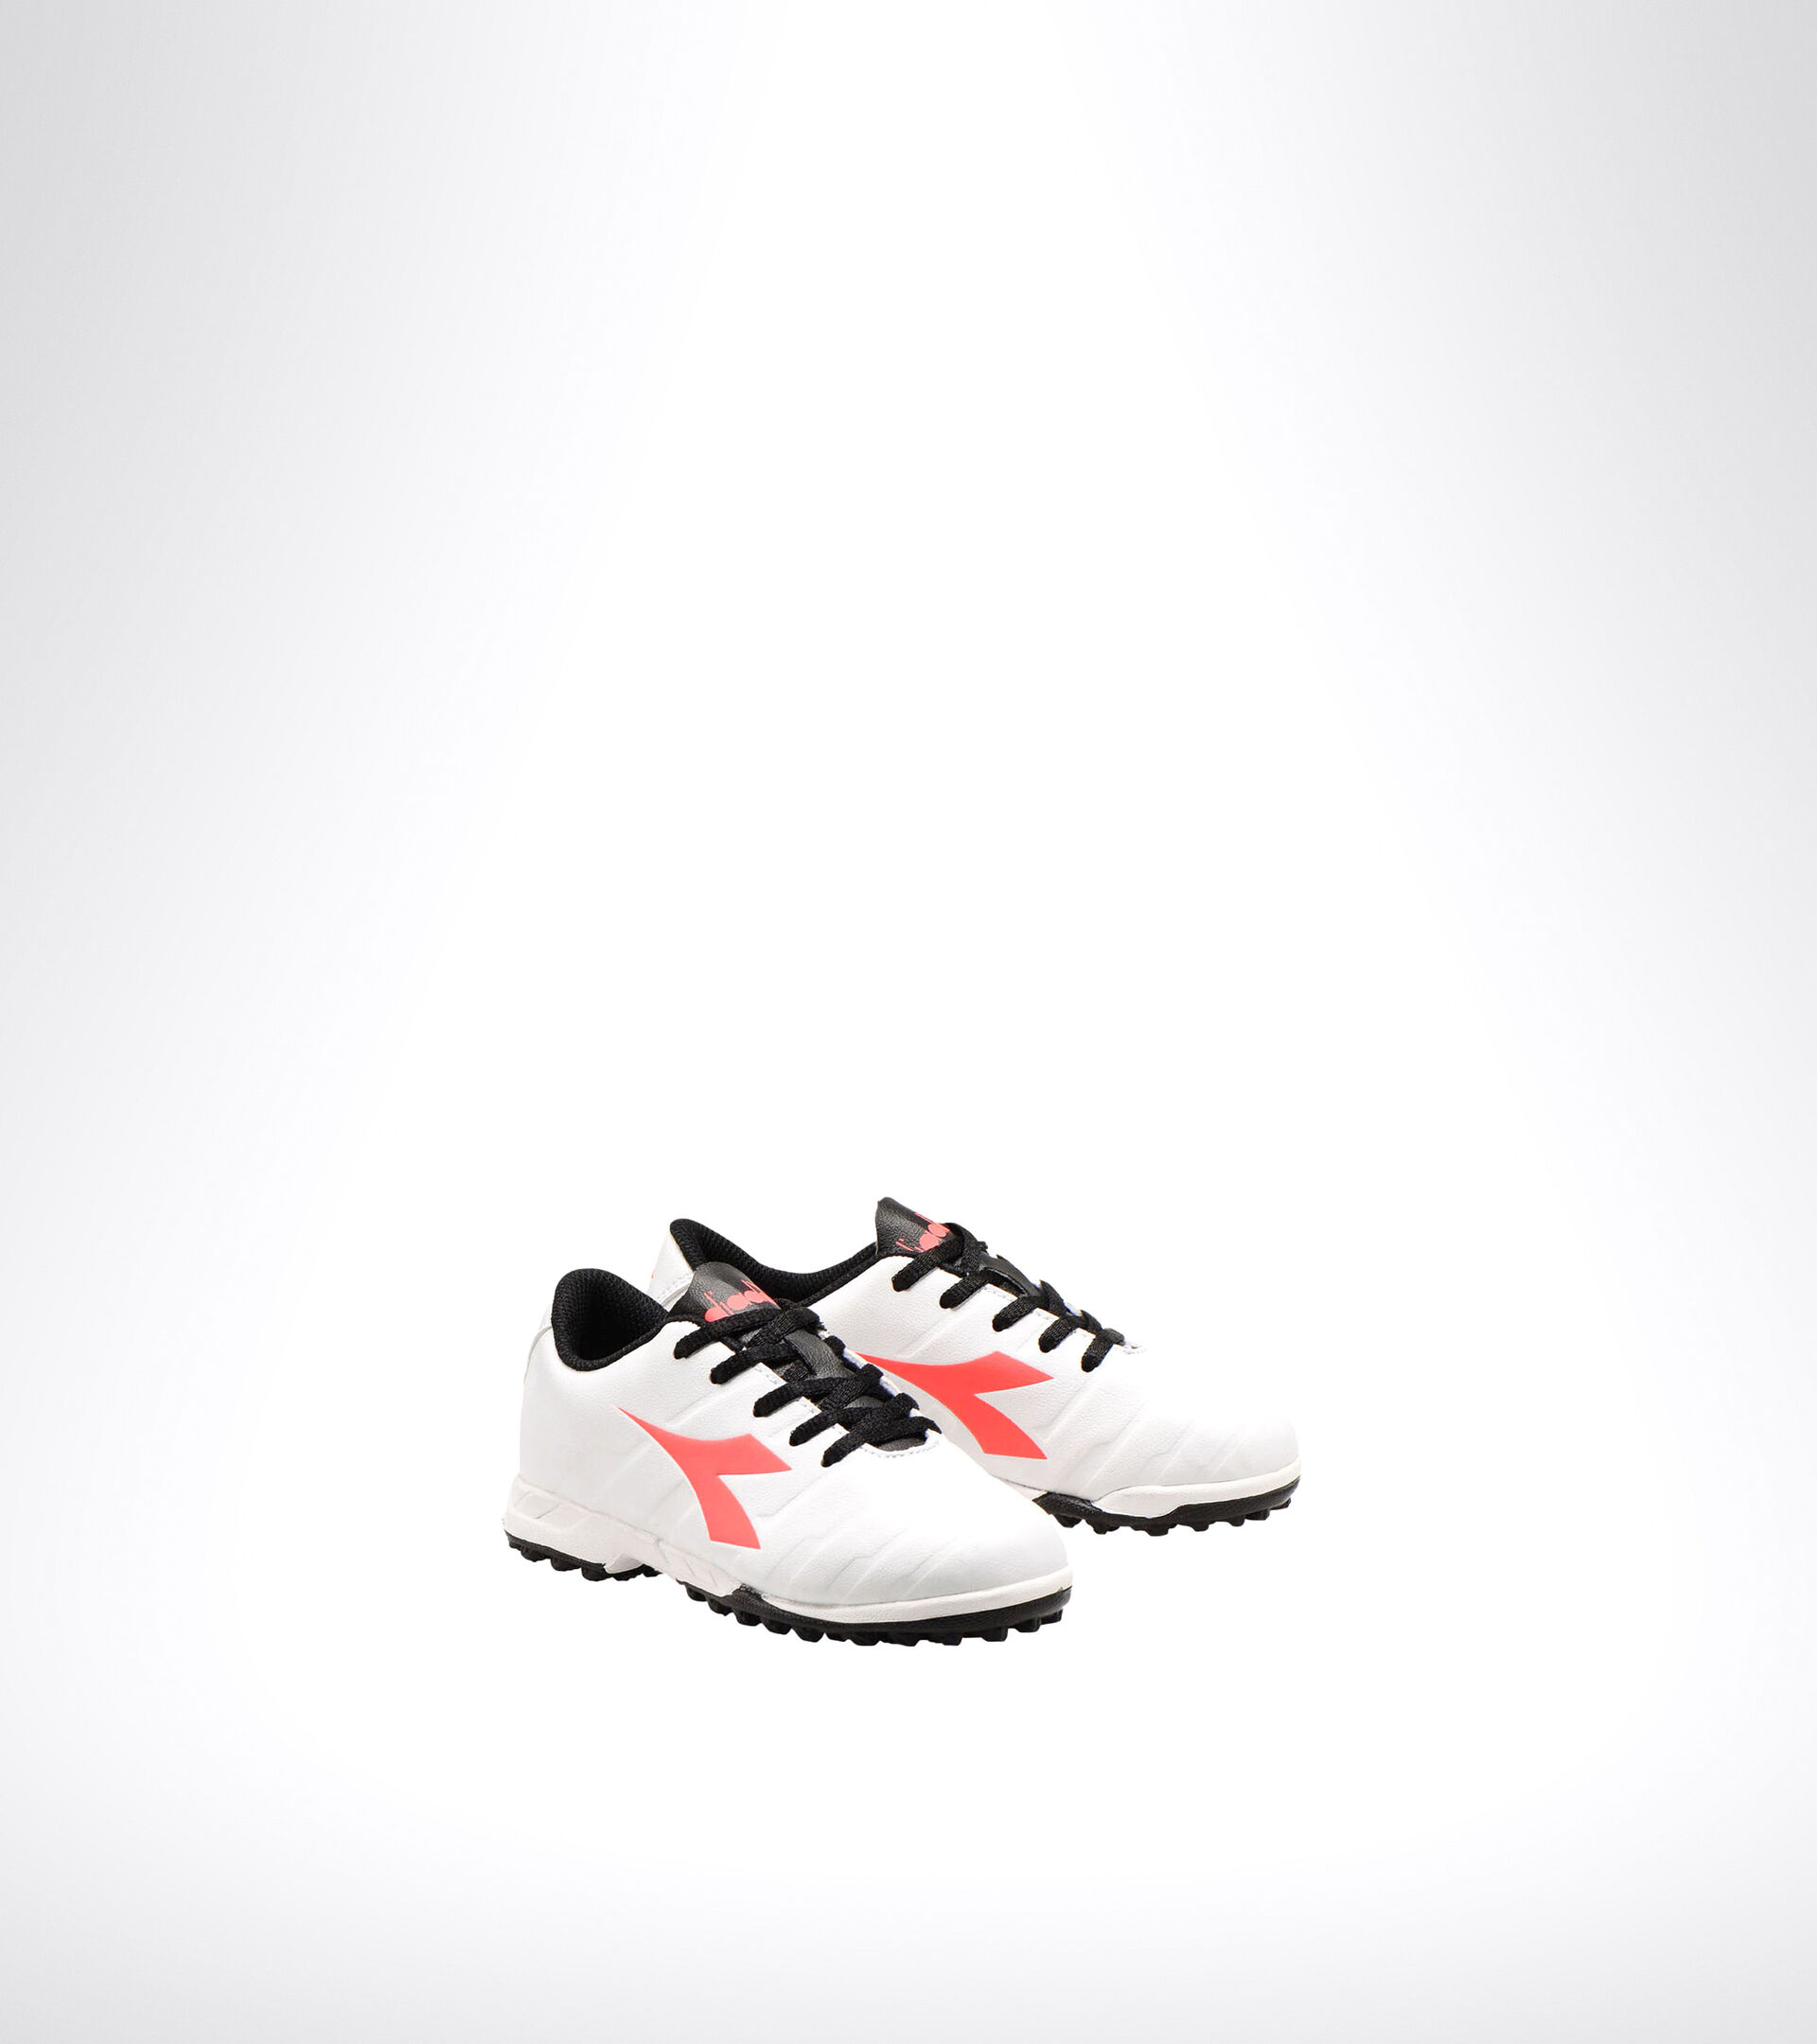 Chaussures de football pour terrains durs ou gazon synthétique - Unisexe Enfant PICHICHI 3 TF JR BIANCO/NERO/ROSSO FLUO - Diadora